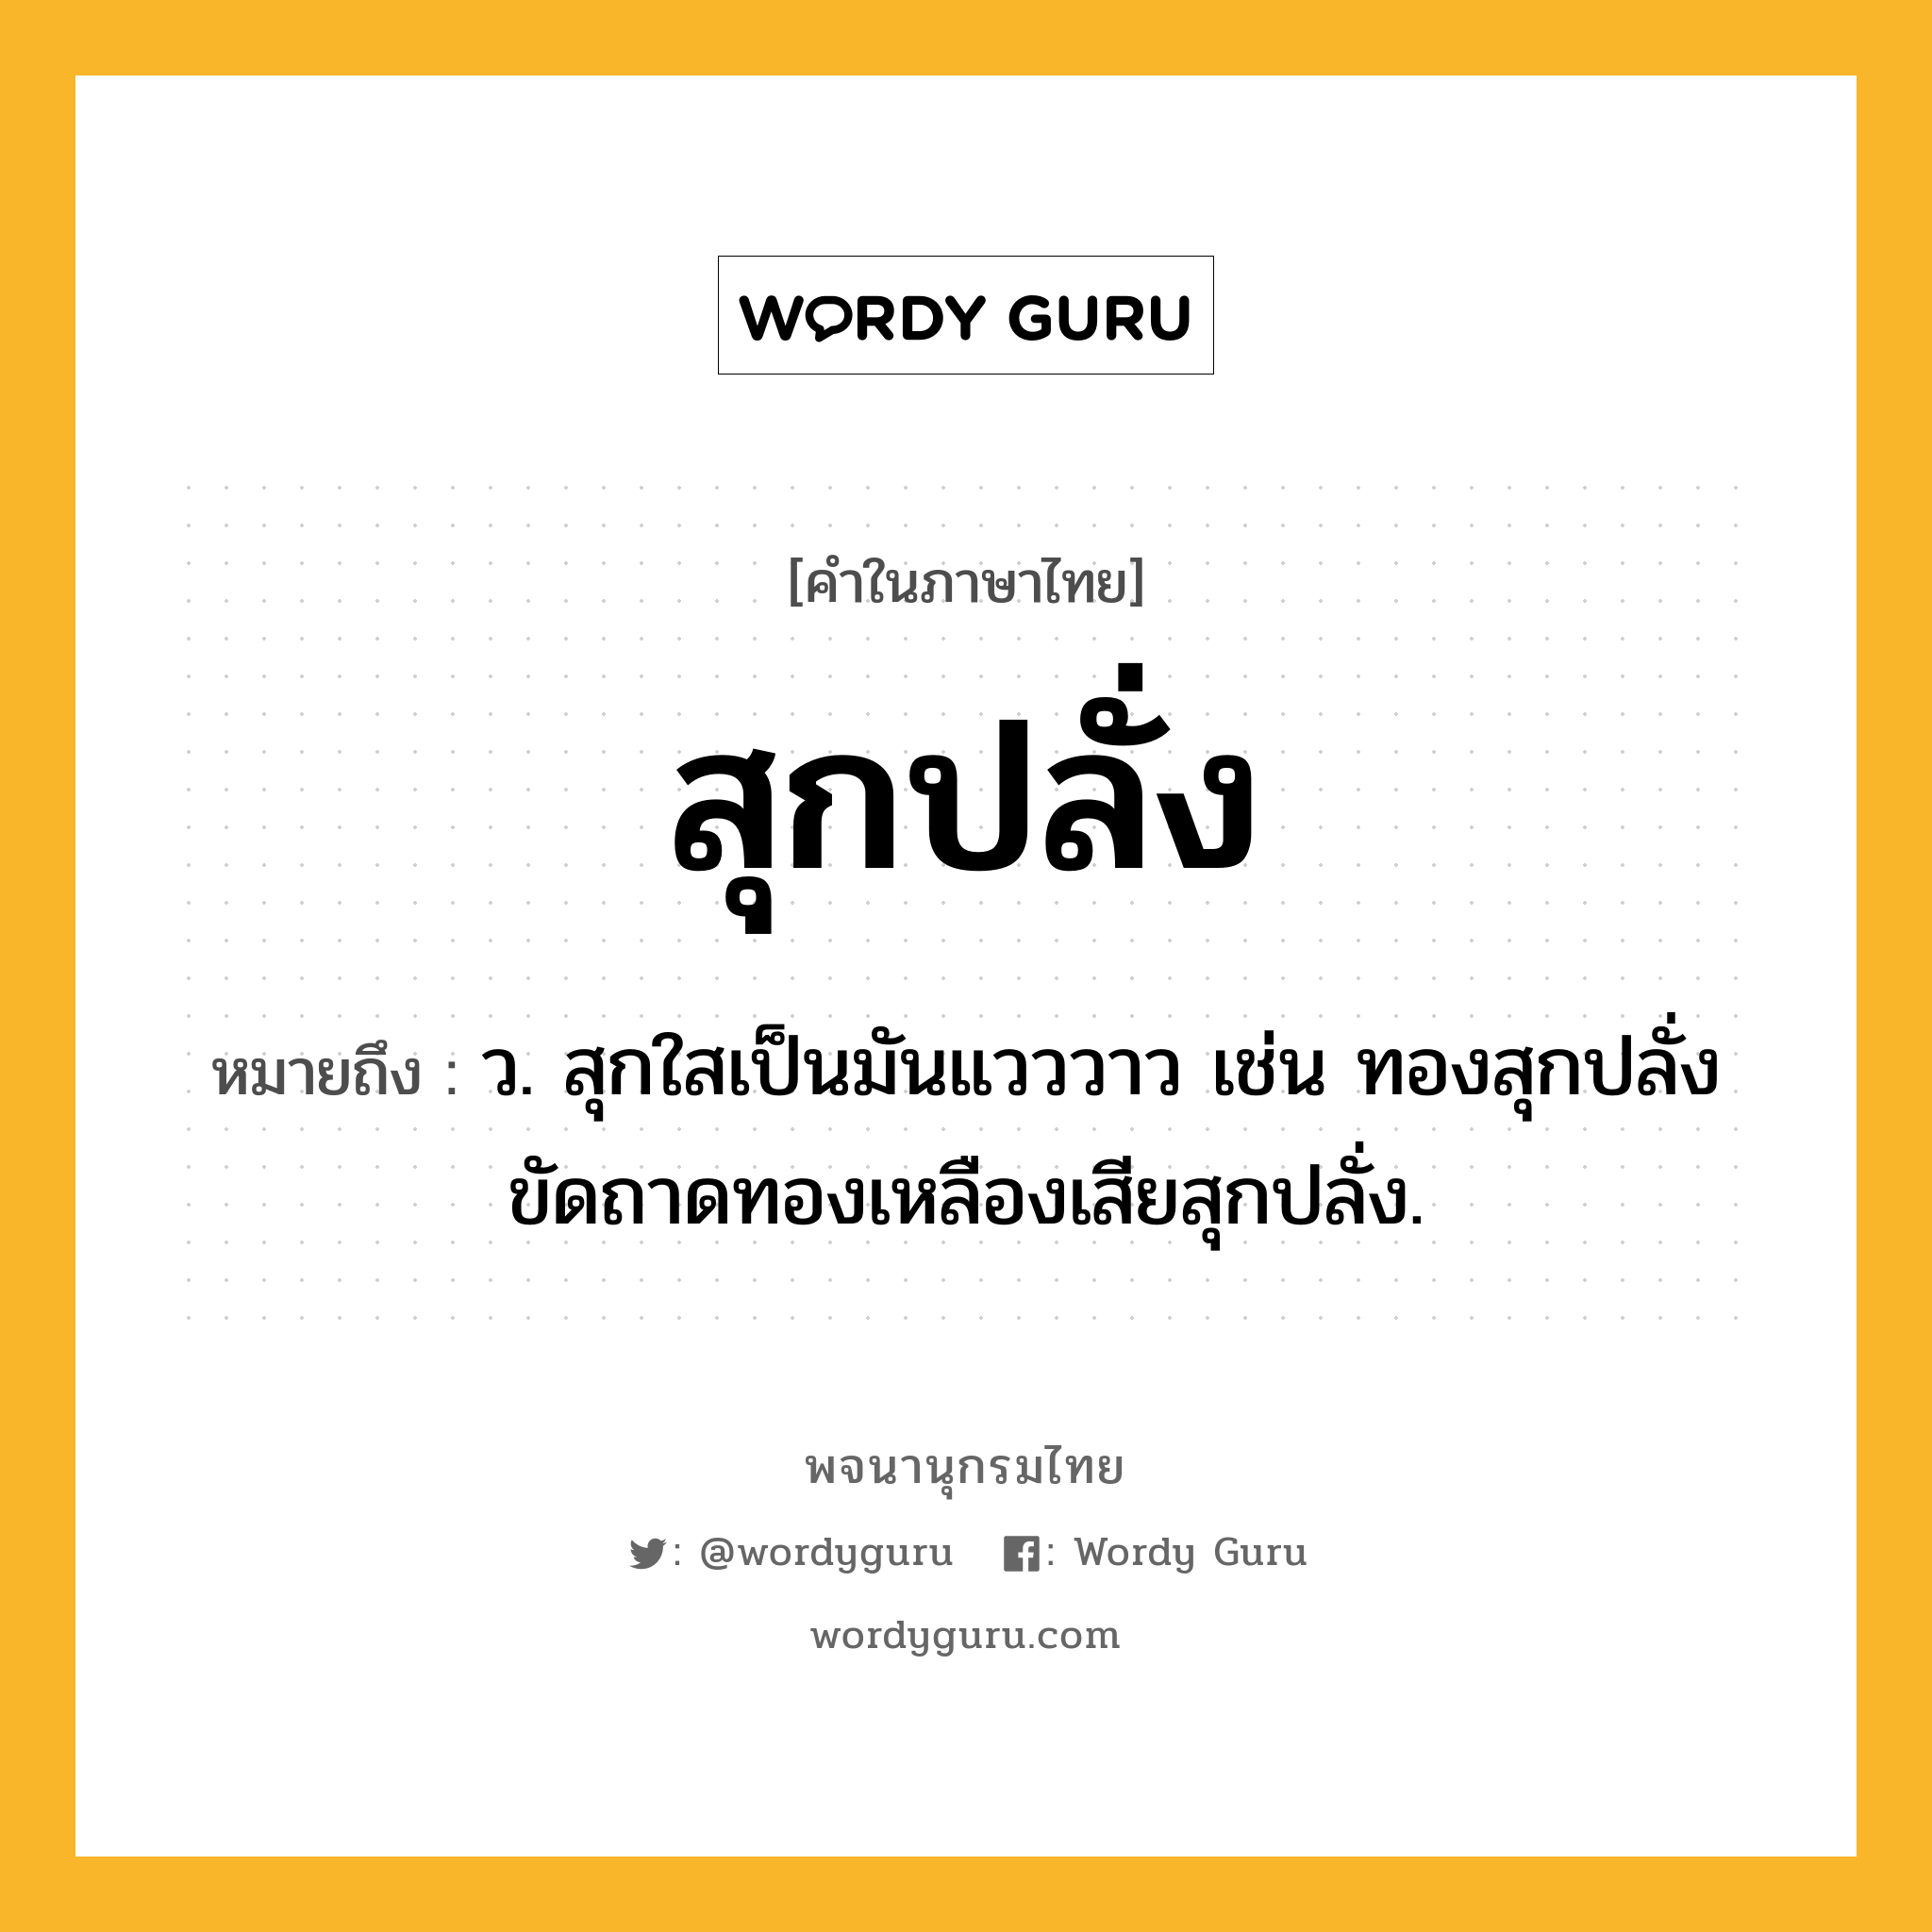 สุกปลั่ง หมายถึงอะไร?, คำในภาษาไทย สุกปลั่ง หมายถึง ว. สุกใสเป็นมันแวววาว เช่น ทองสุกปลั่ง ขัดถาดทองเหลืองเสียสุกปลั่ง.